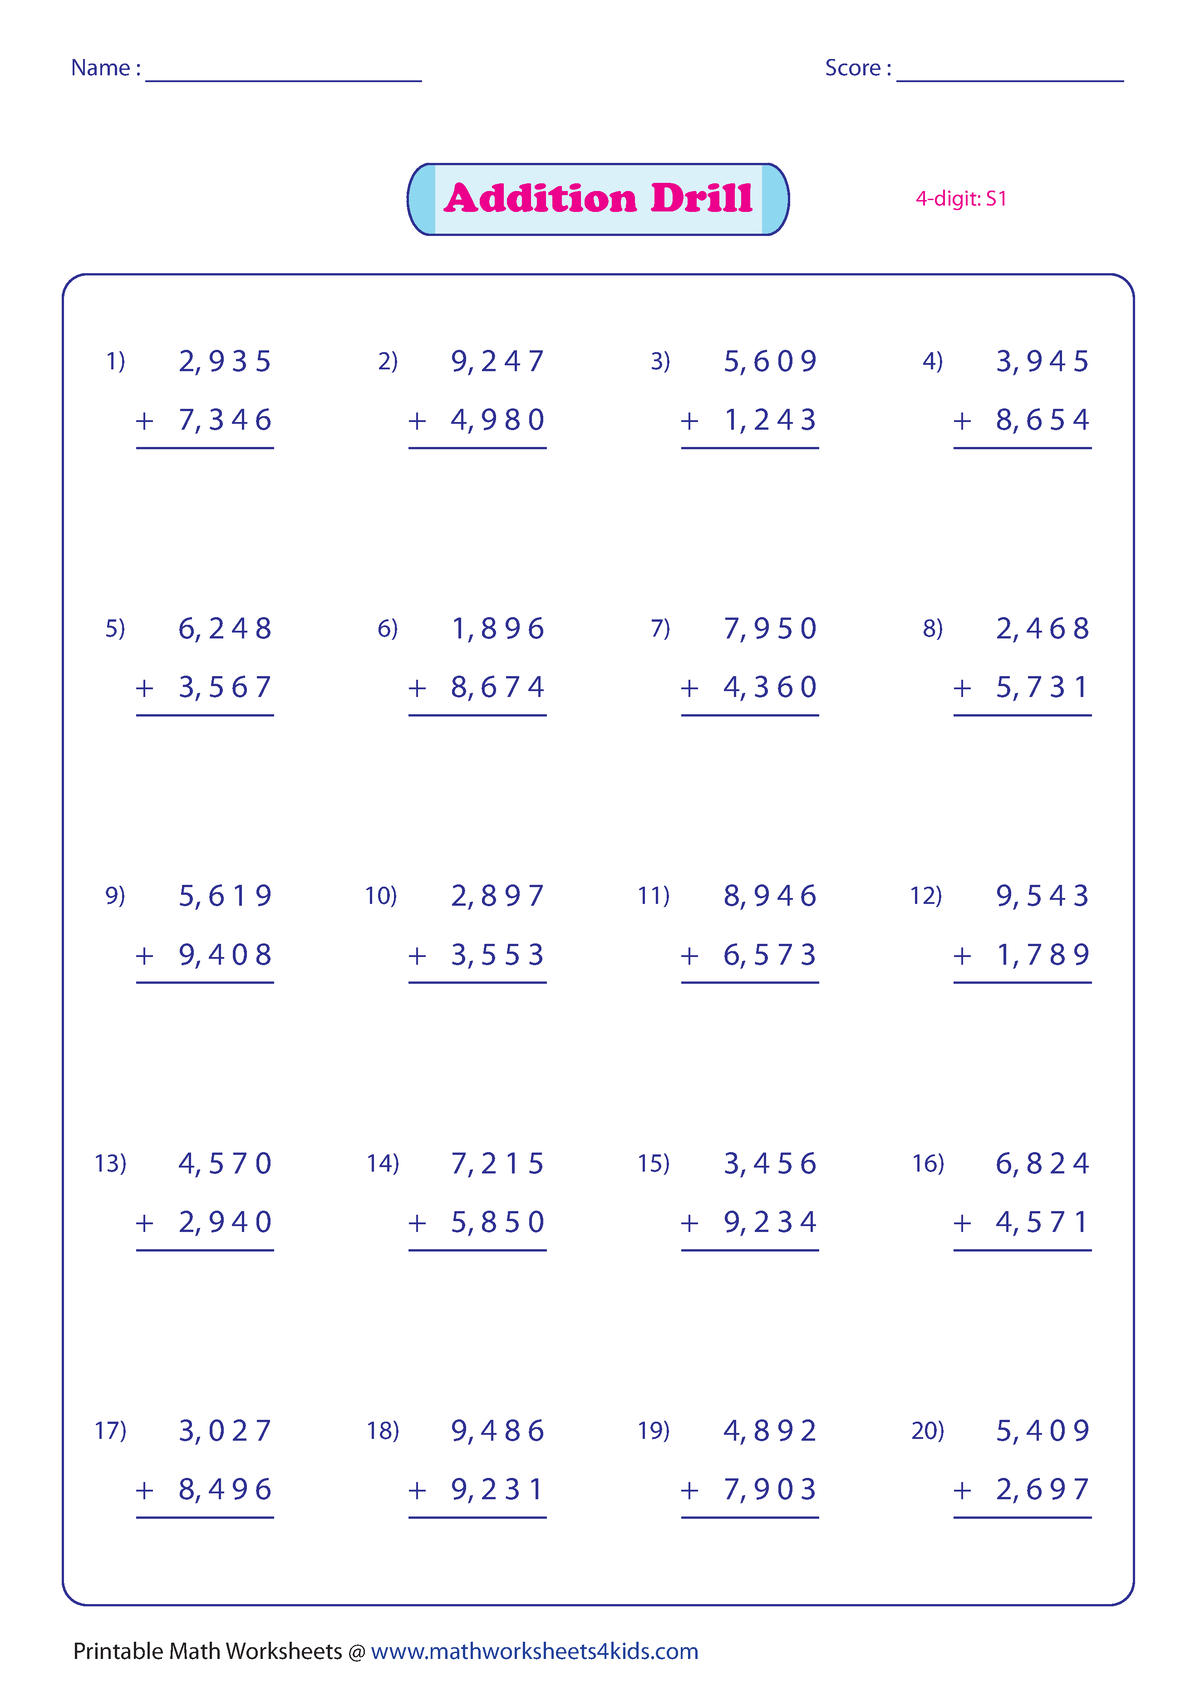 Printable Worksheets Mathworksheets4kids Com